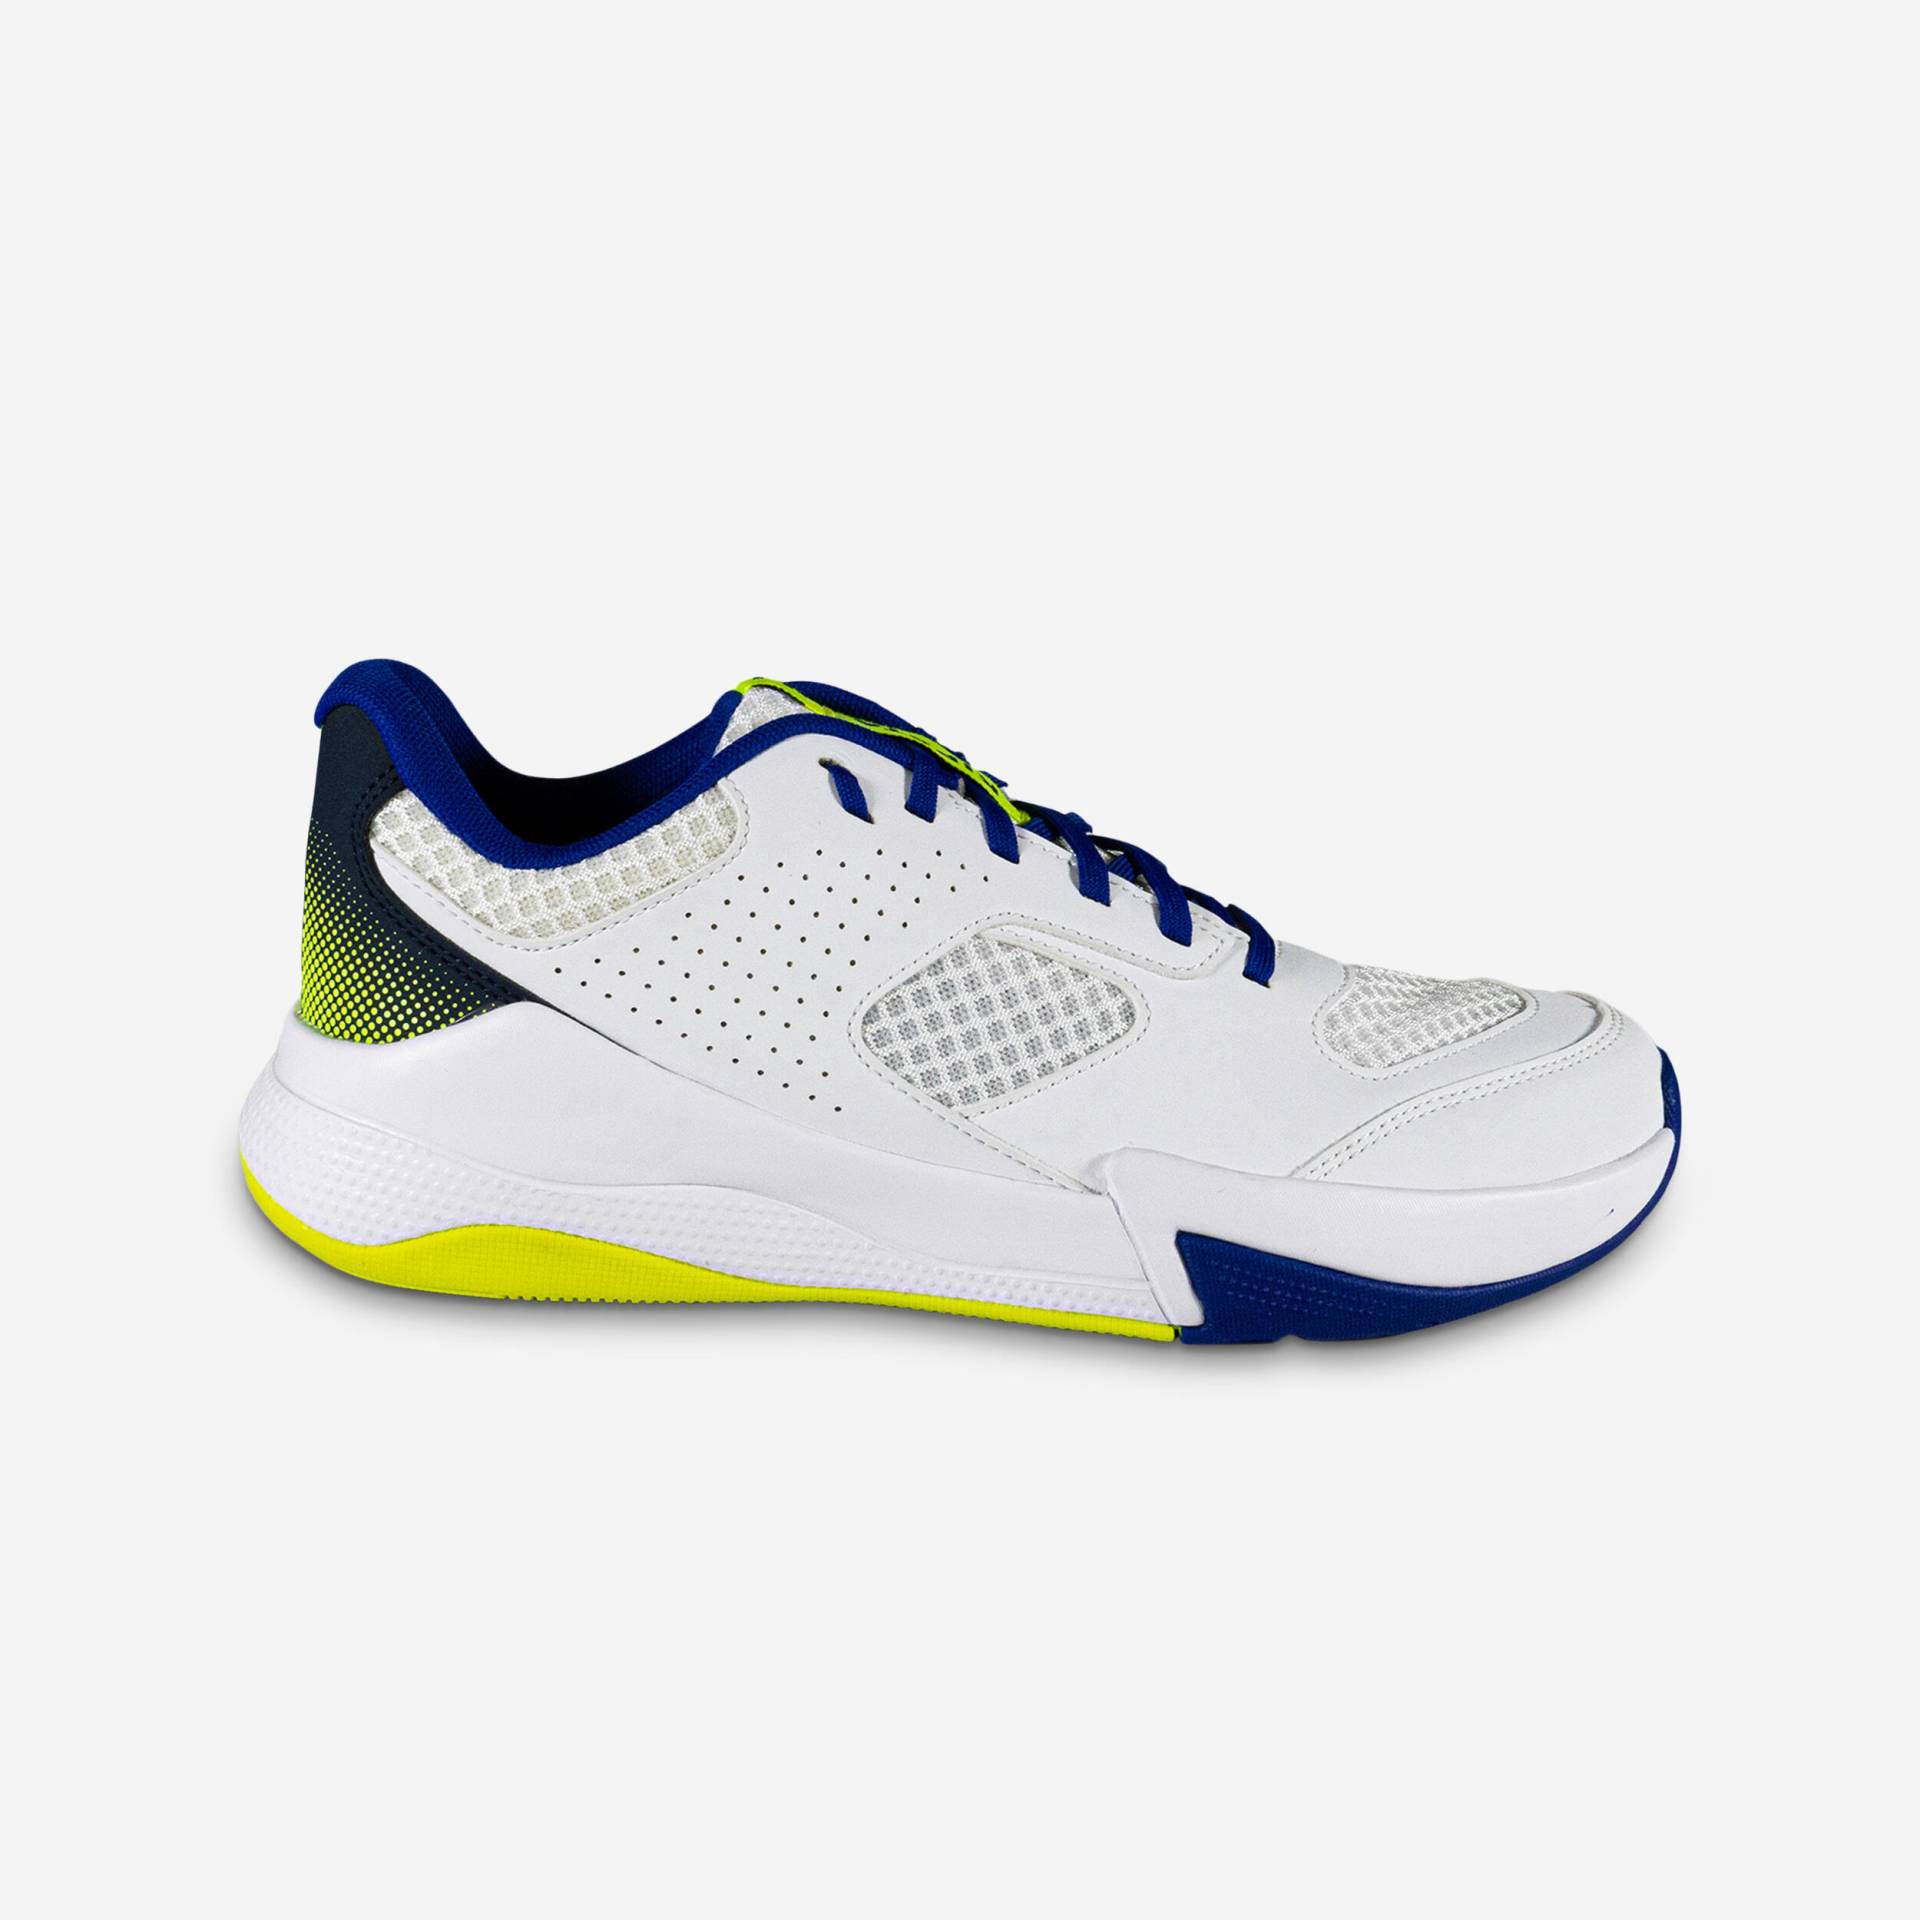 Damen/Herren Volleyball Schuhe - Komfort weiss/blau/neongelb von ALLSIX